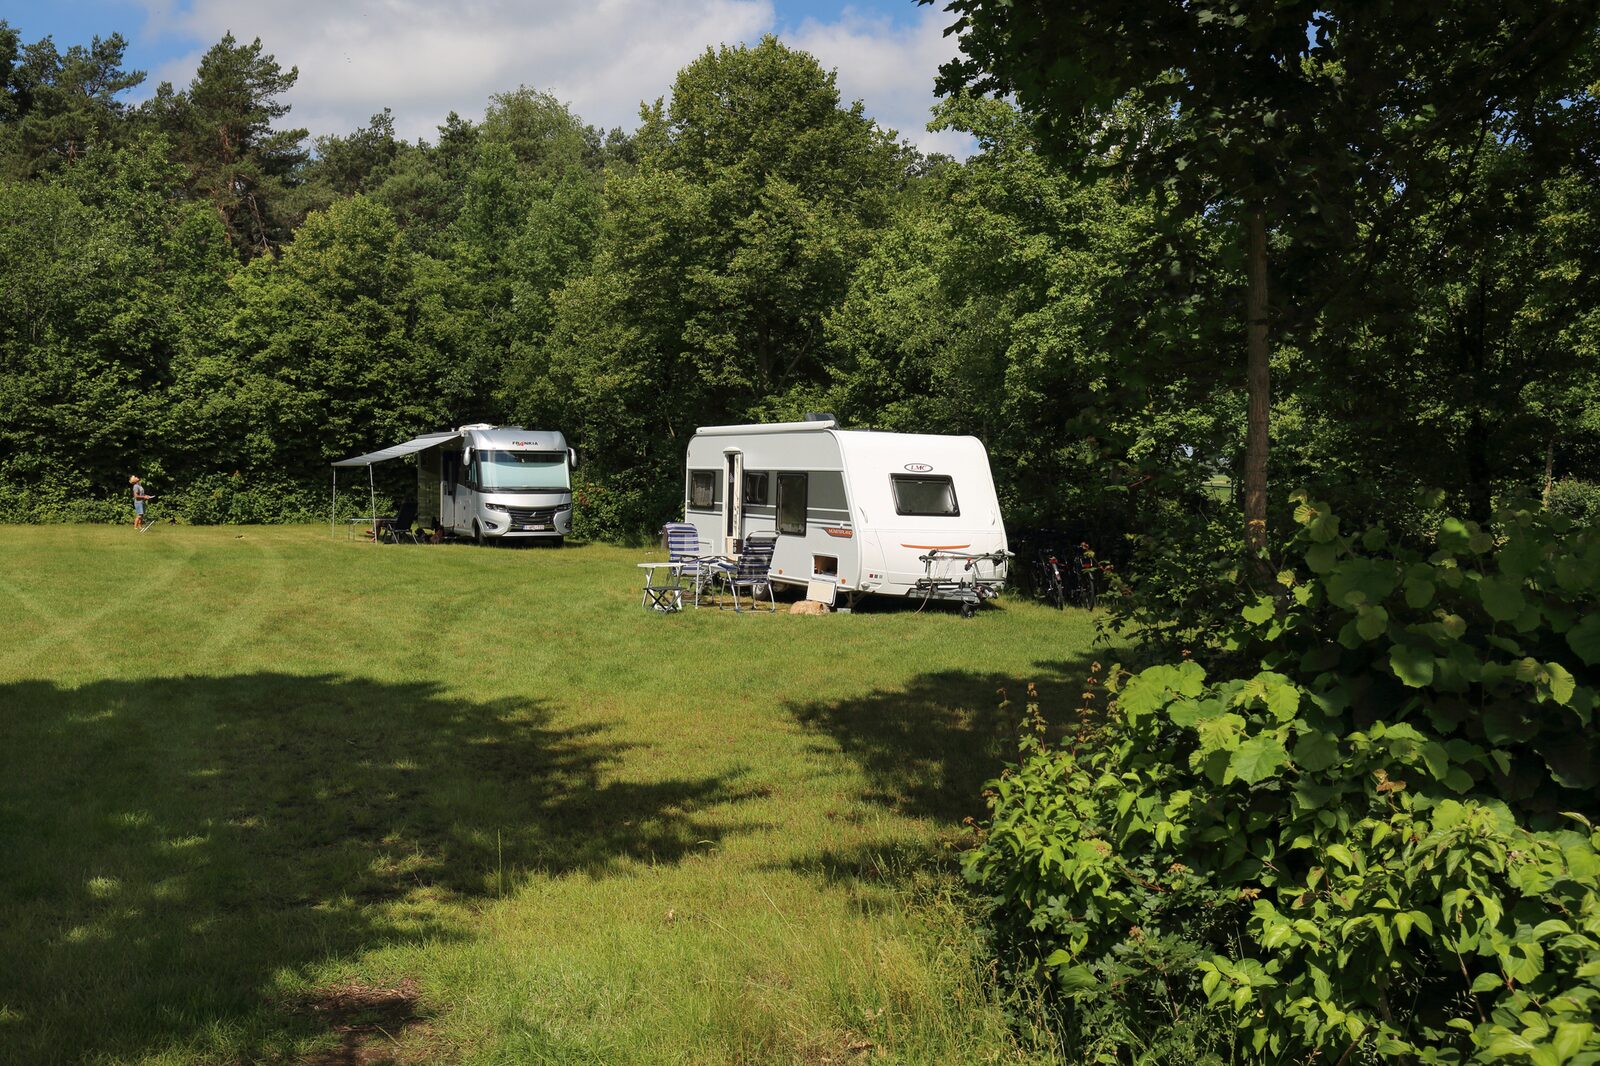 Emplacement de camping pour deux personnes, électricité non incluses